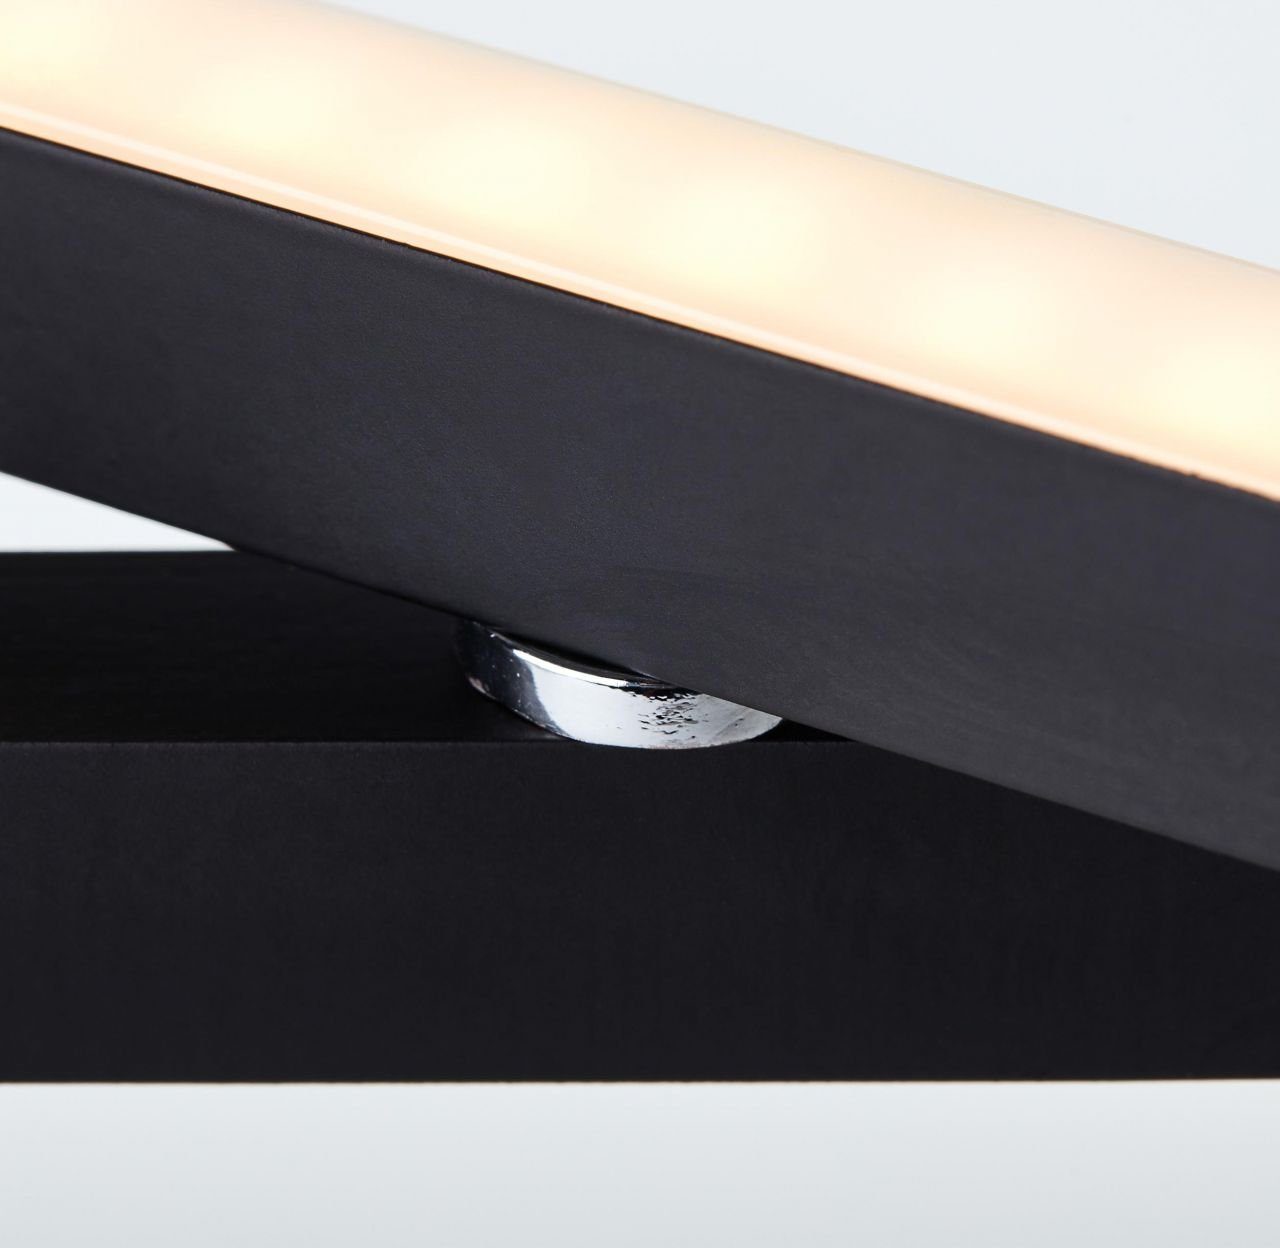 Brilliant Tischleuchte LED schwarz, 2flg Tischleuchte Ranut, Ranut Lampe, 3000K, LED 9W 2x integriert, LED